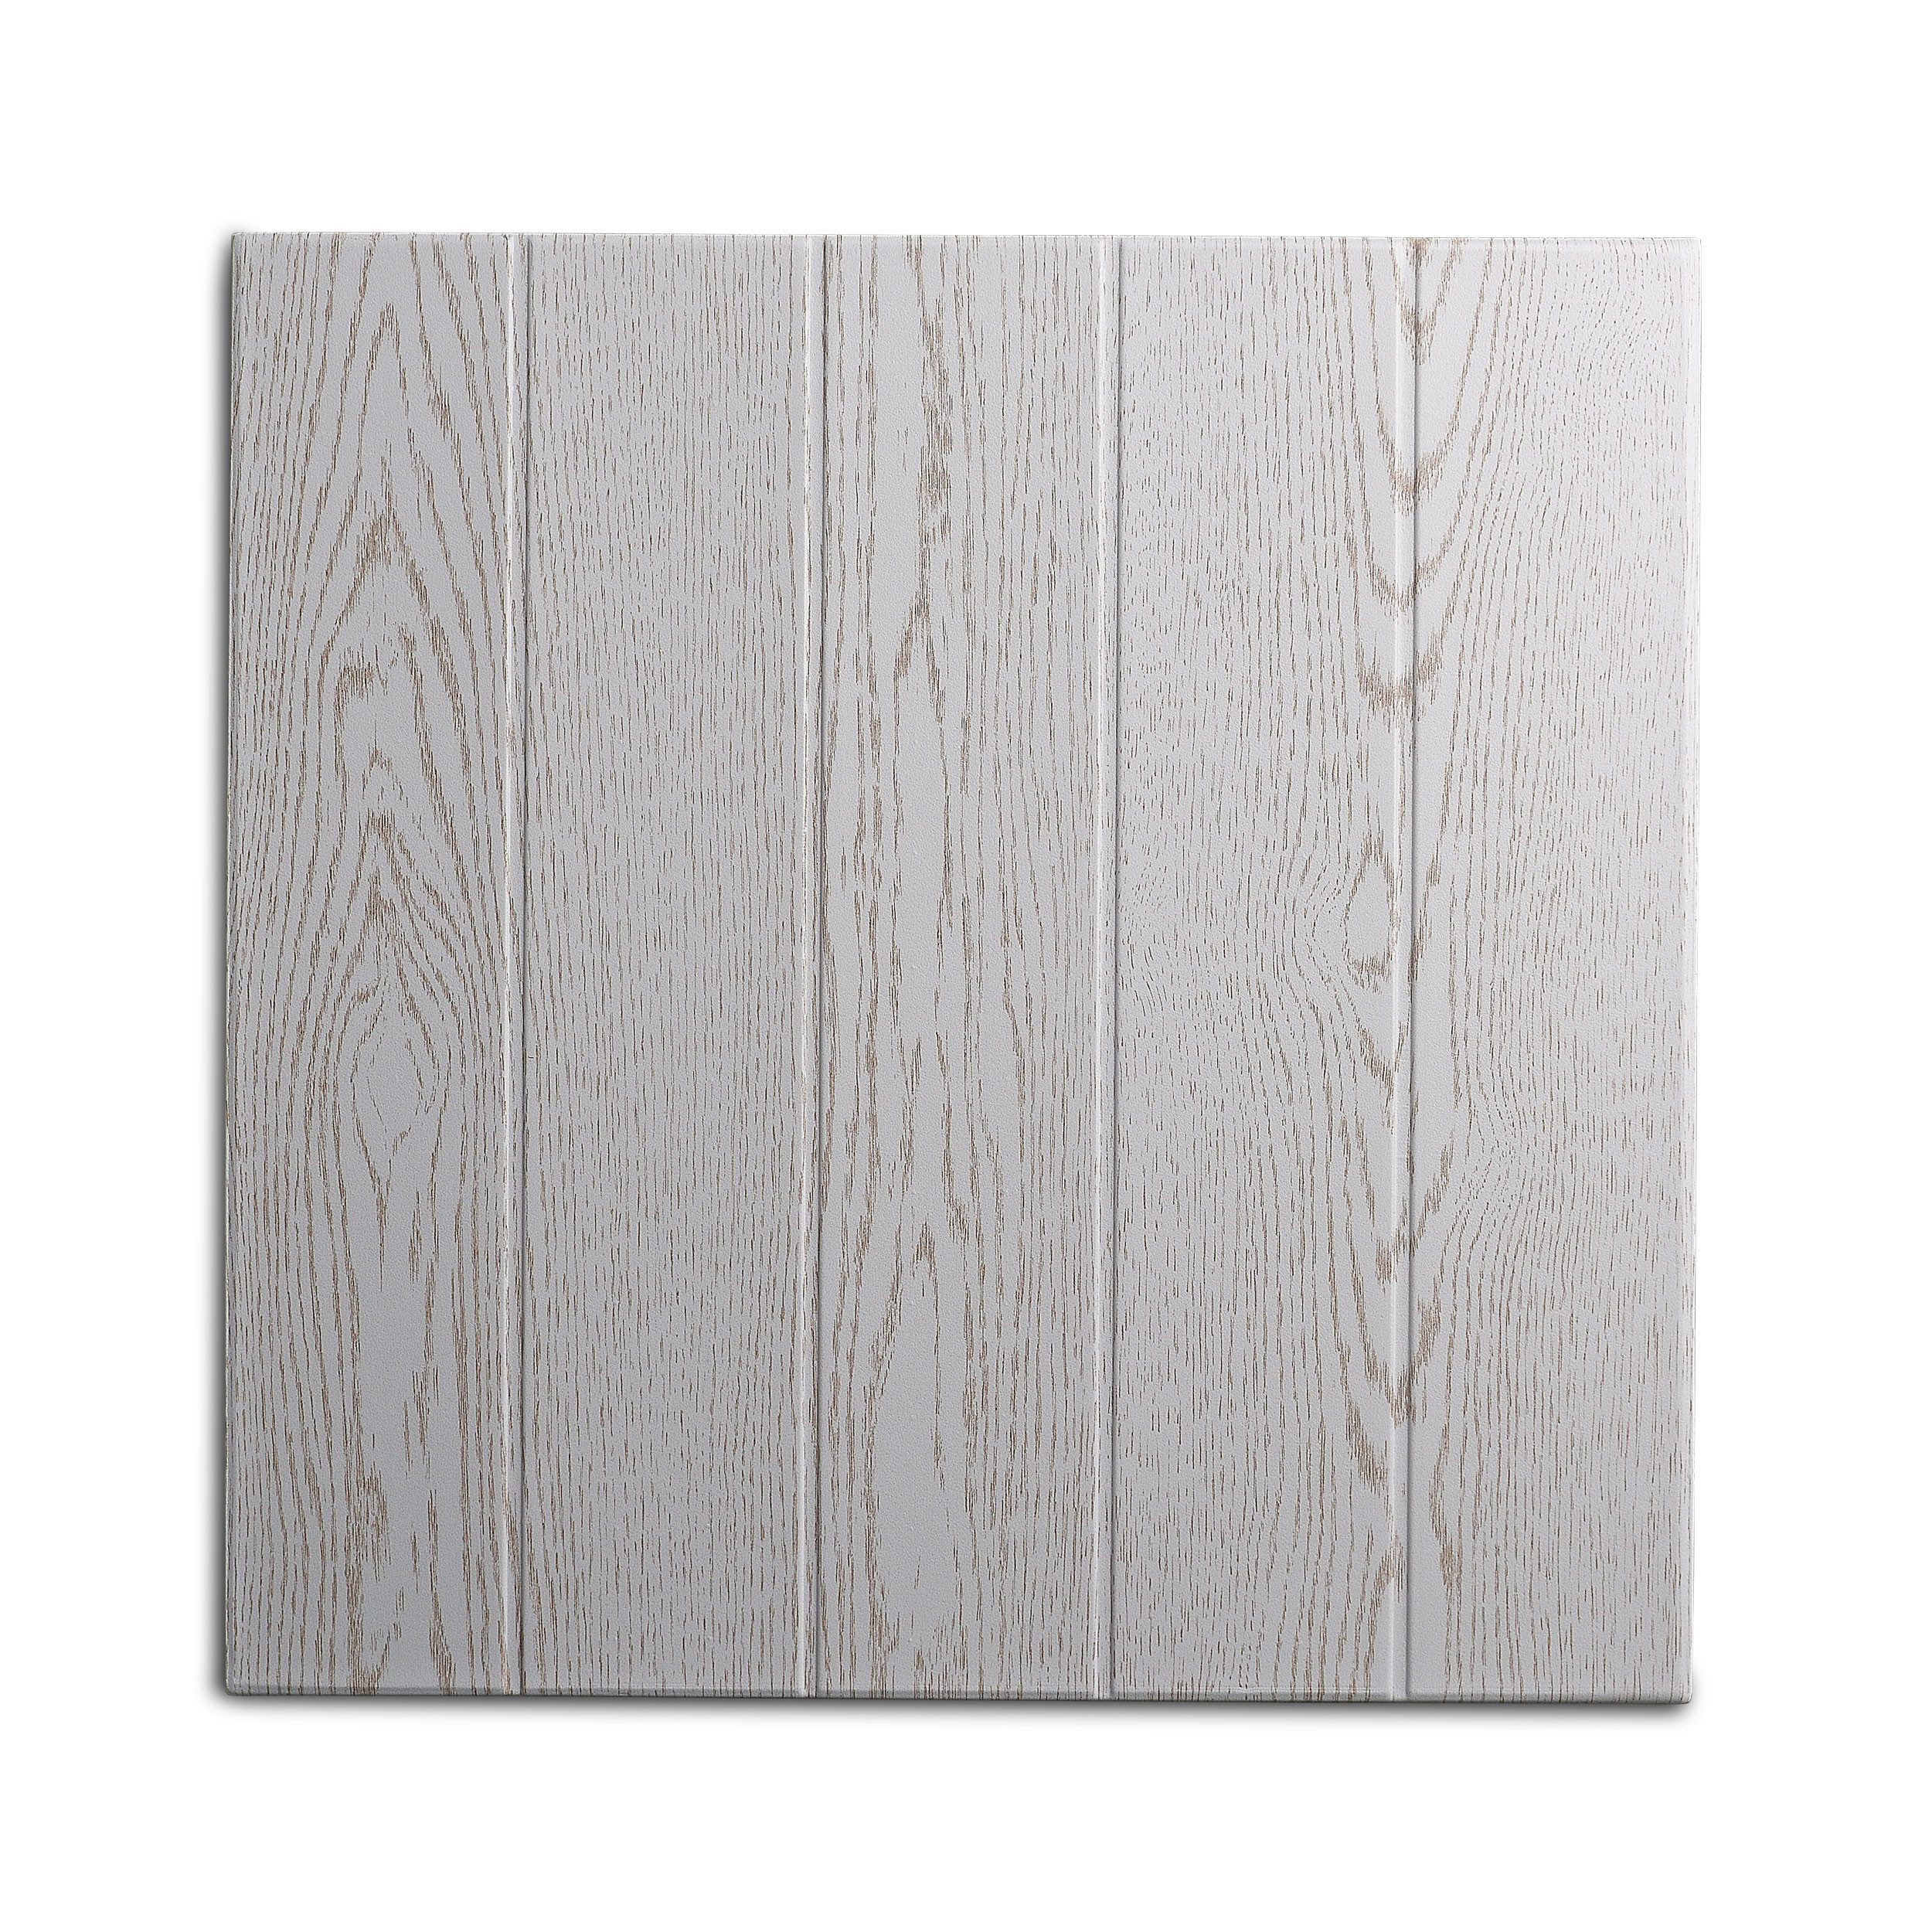 Decosa Deckenpaneel Decosa Deckenplatte Athen, esche weiß, 50 x 50 cm, BxL: 50x50 cm, 2 qm, (20-tlg)